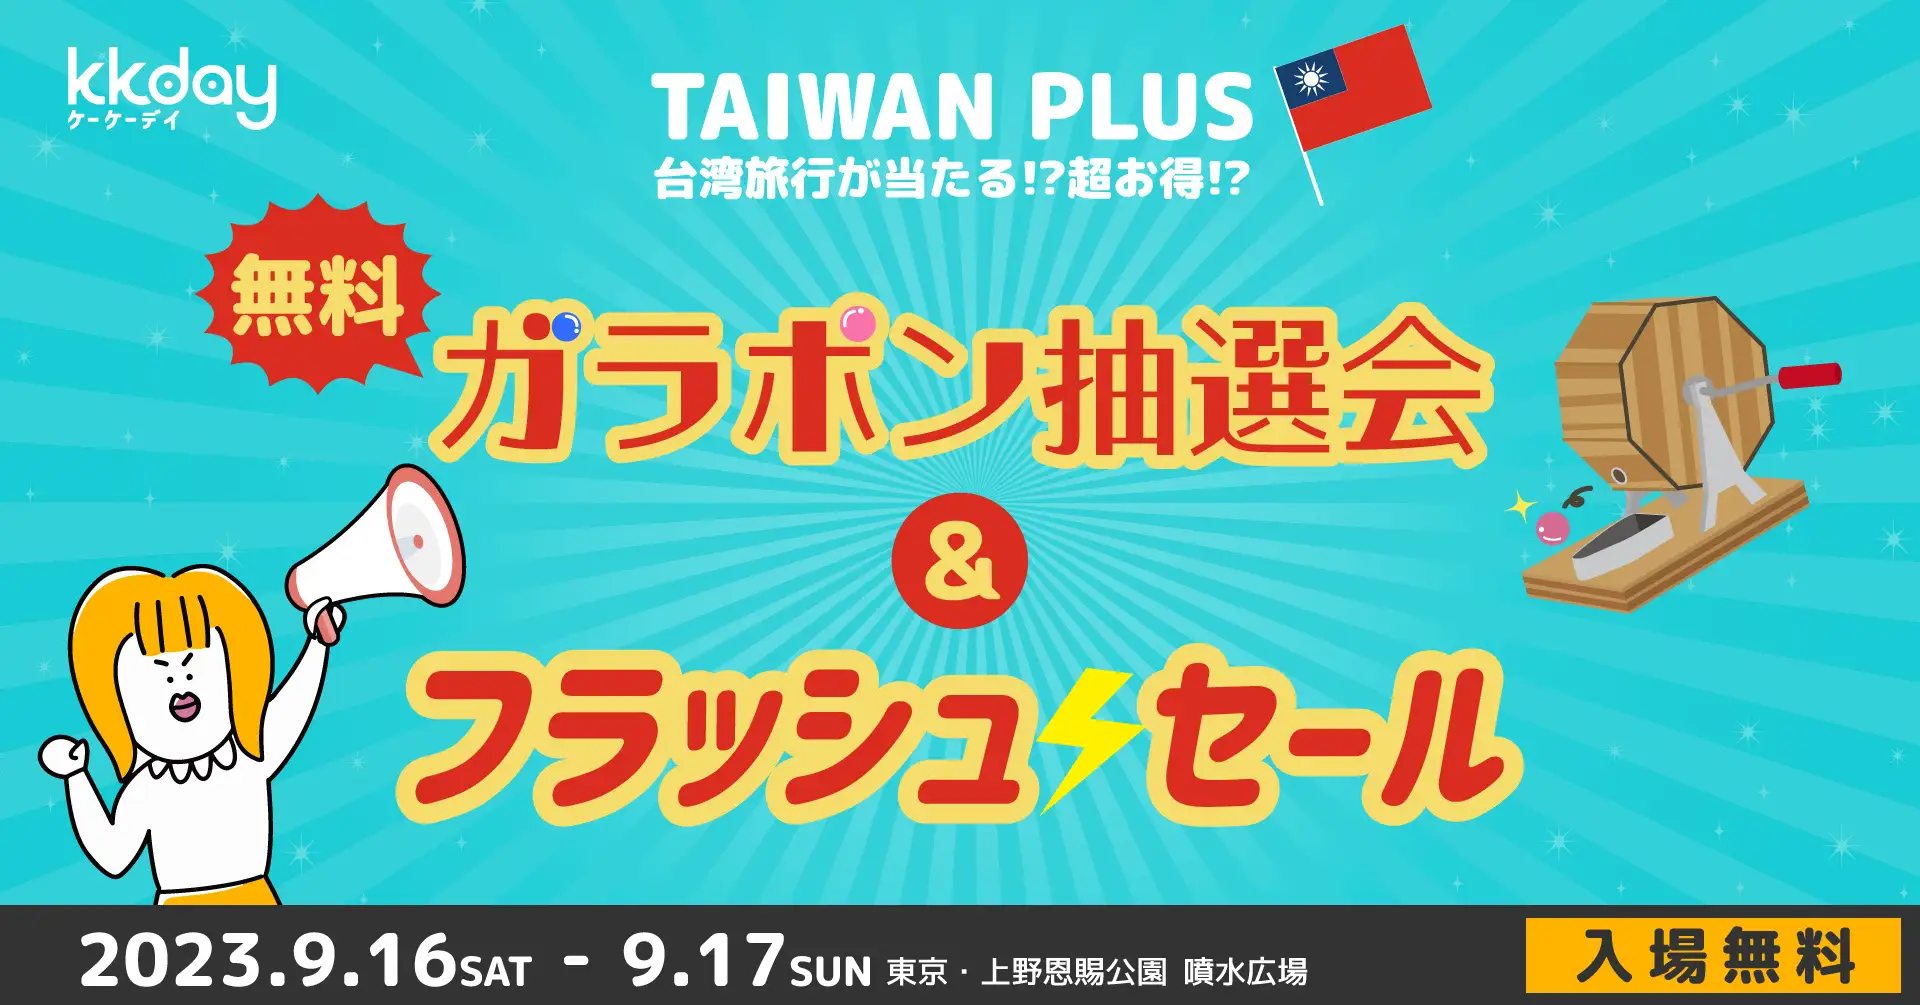 KKday、TAIWAN PLUS2023にブース出展。台湾旅行フラッシュセール、台湾5つ星ホテル宿泊券など豪華賞品が当たる無料ガラポン抽選会も開催。